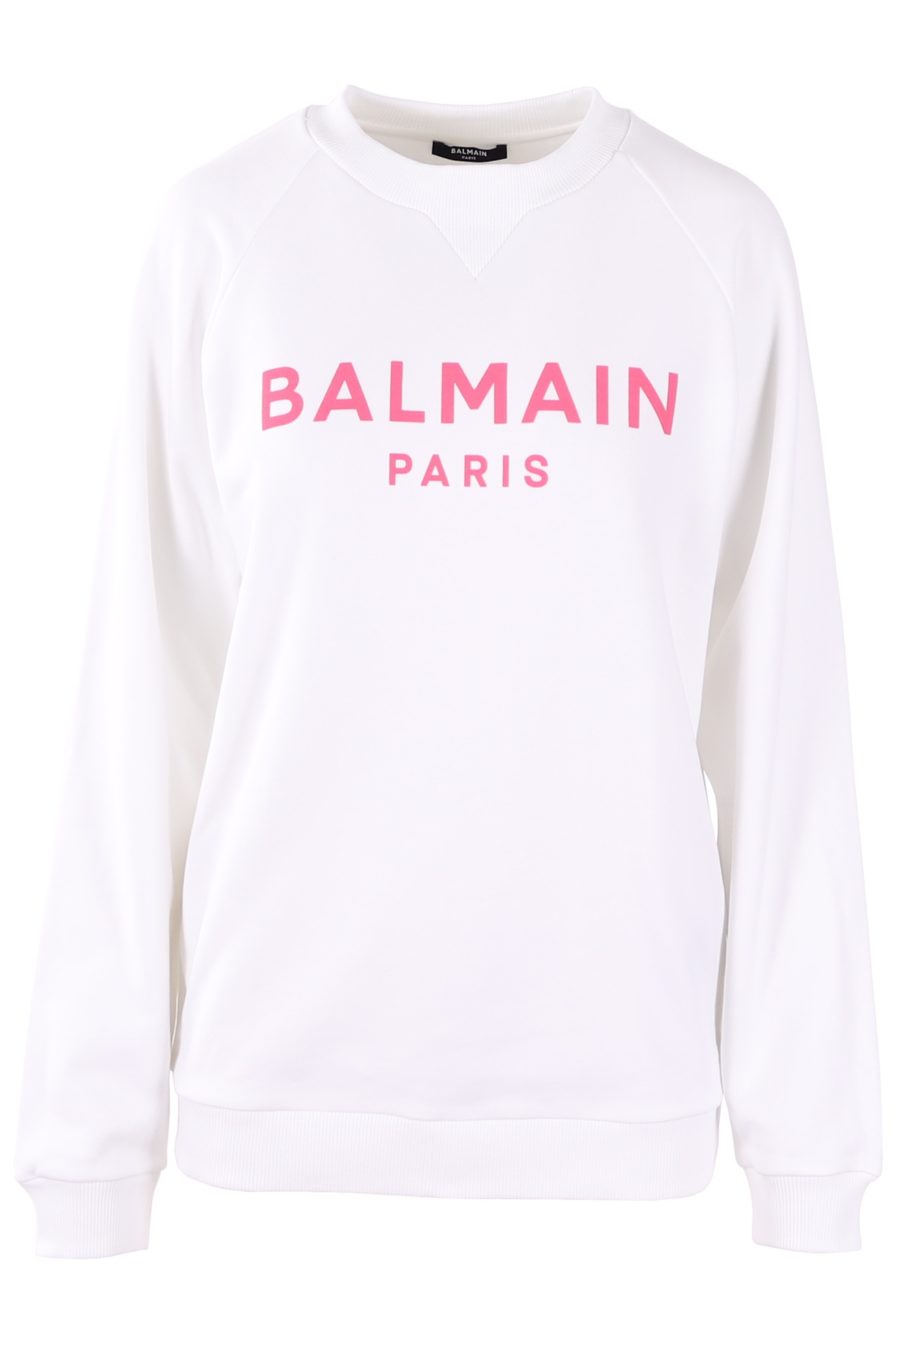 Sweatshirt Balmain blanc avec logo rose - 0fab92ca1f938424b2c2be4074803ca78bbb054d